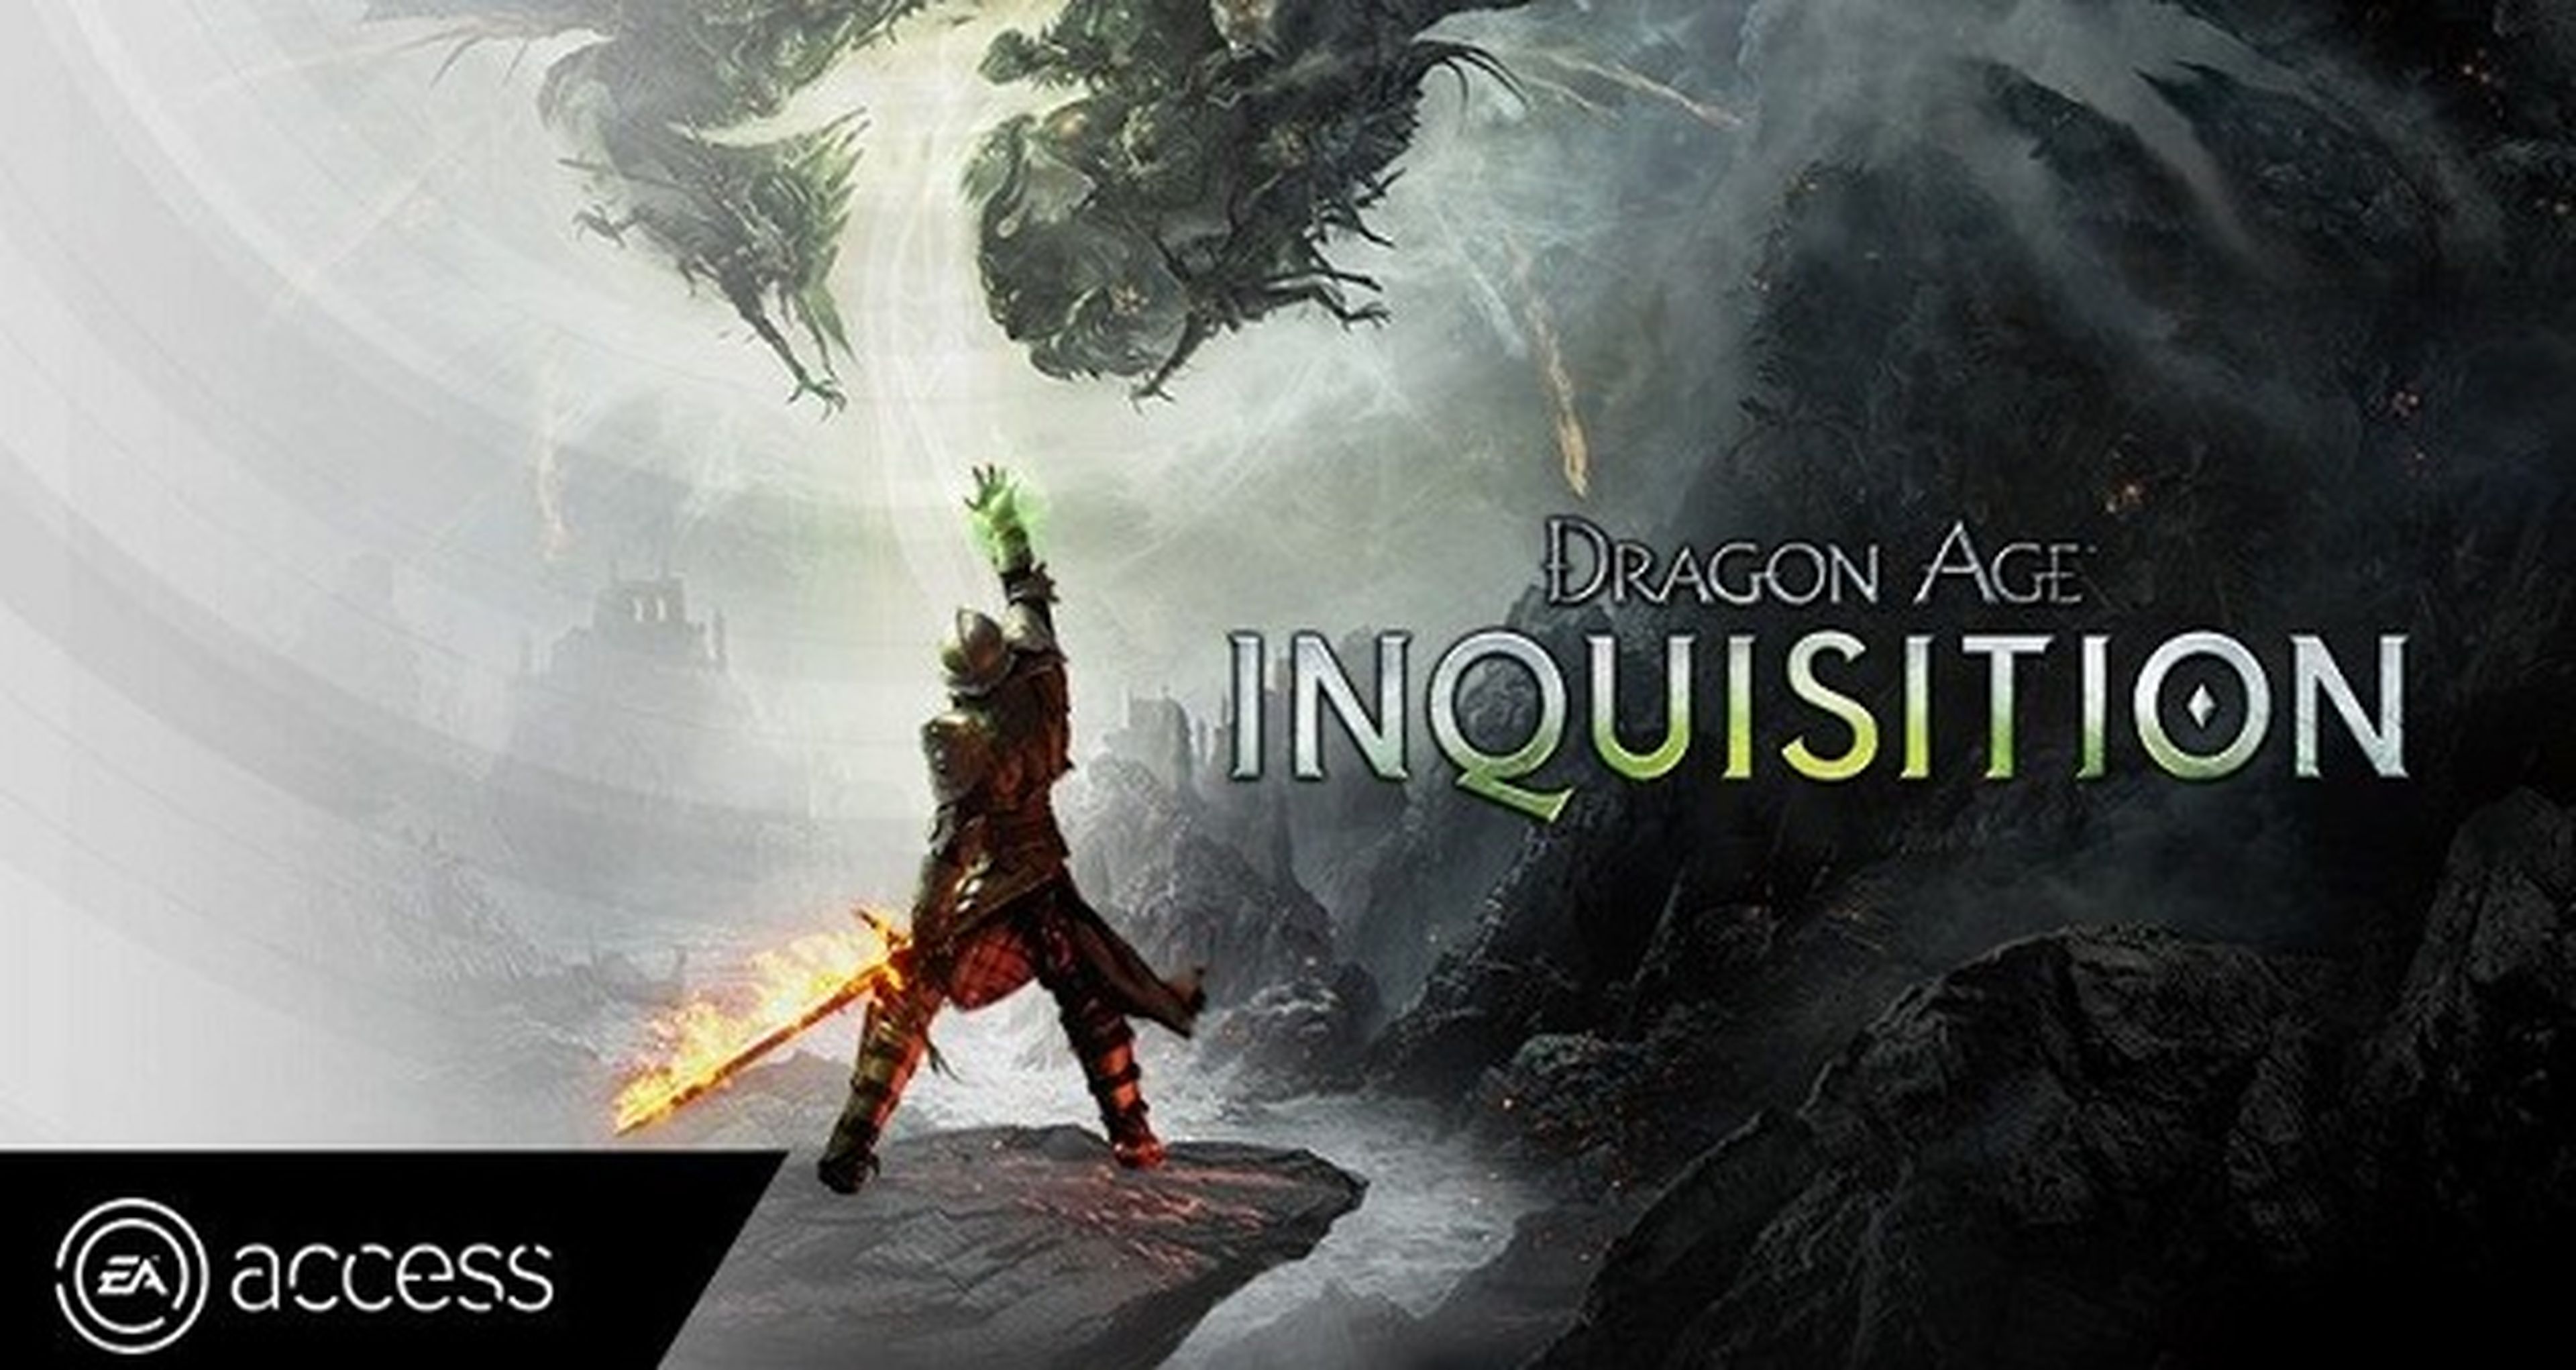 Dragon Age Inquisition ya tiene acceso anticipado en EA Access